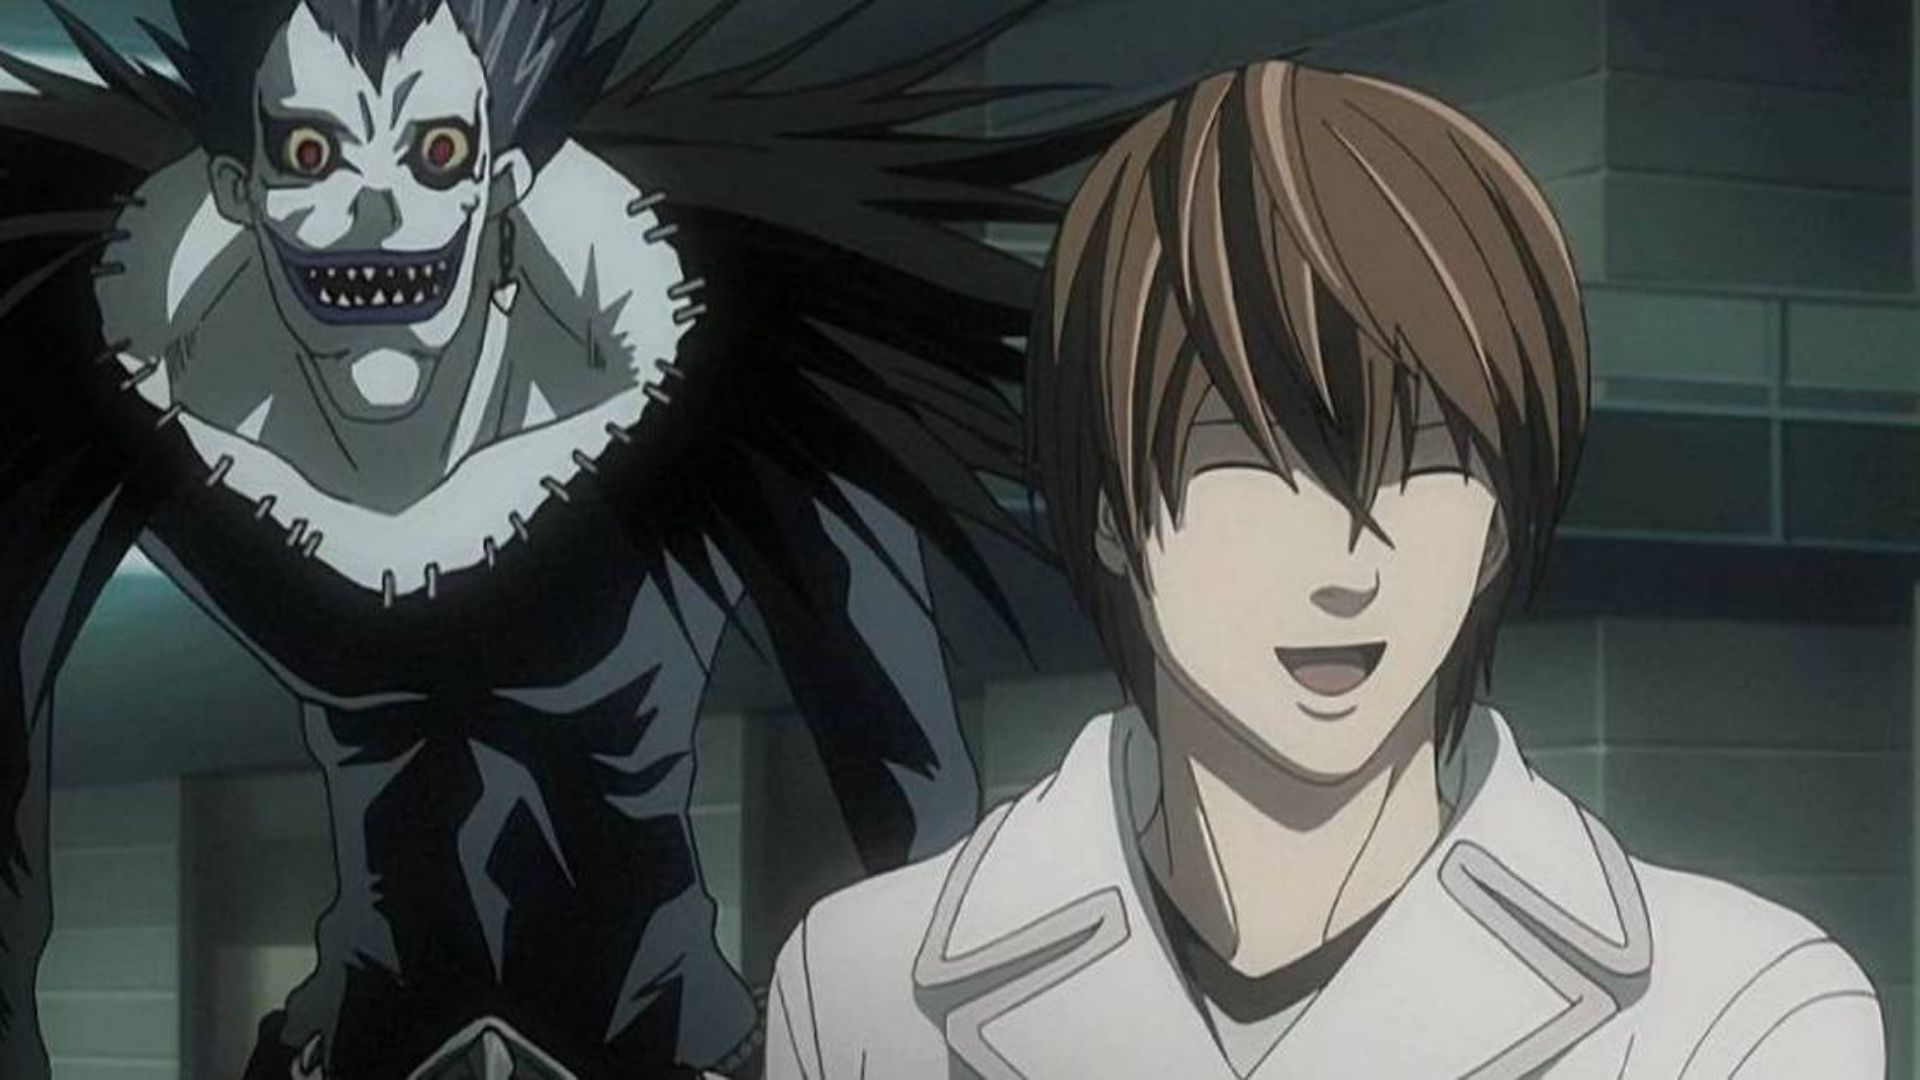 Streaming da HBO terá animes como Death Note e Fullmetal Alchemist para  competir com a Netflix